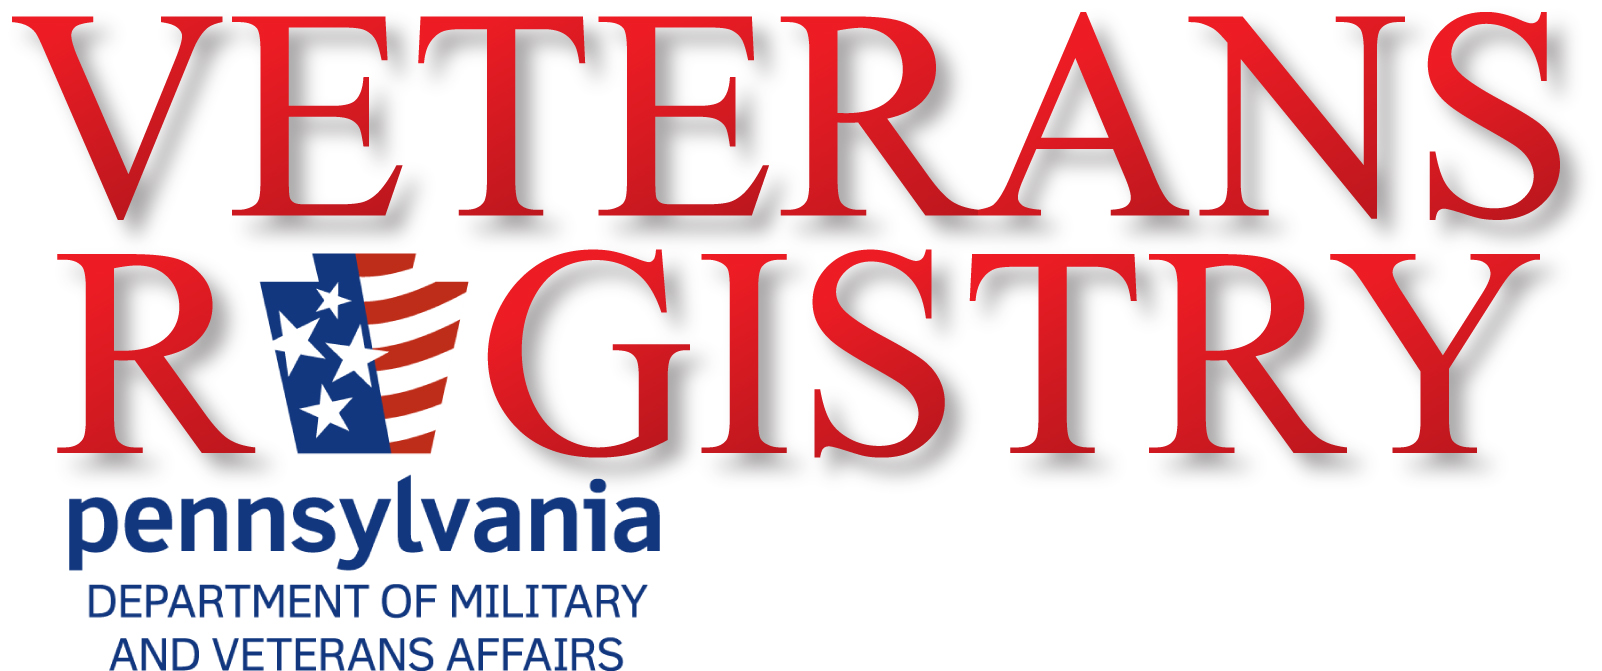 Veterans Registry